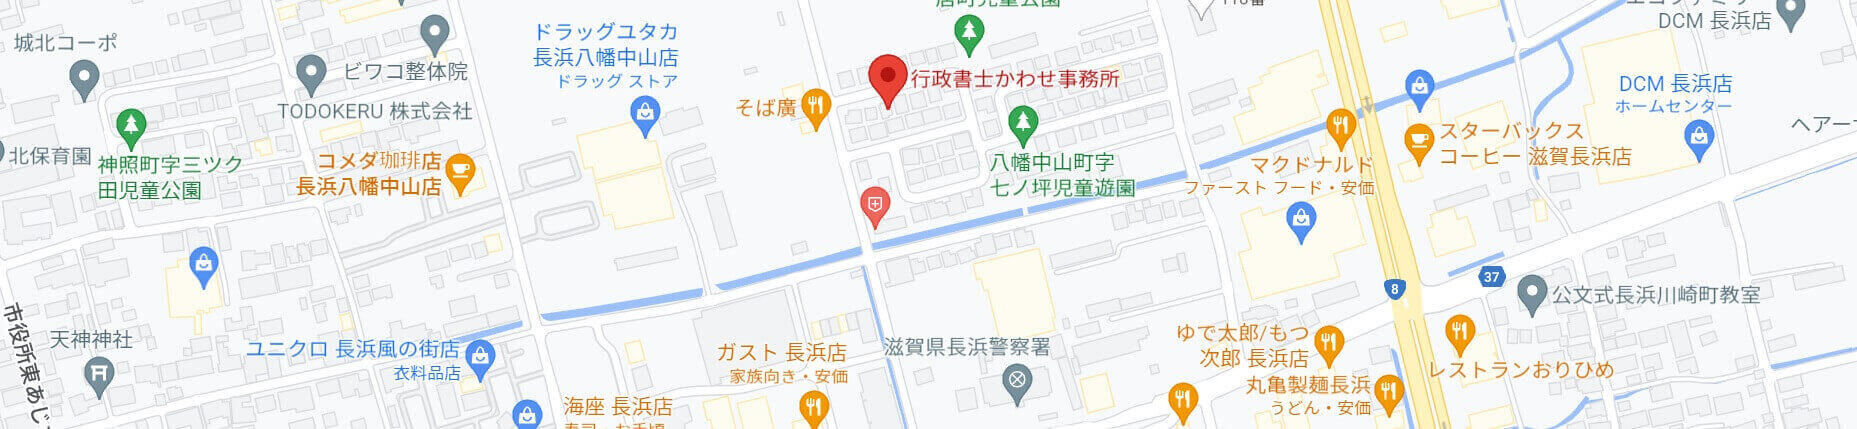 滋賀県長浜市の行政書士かわせ事務所アクセスマップへ